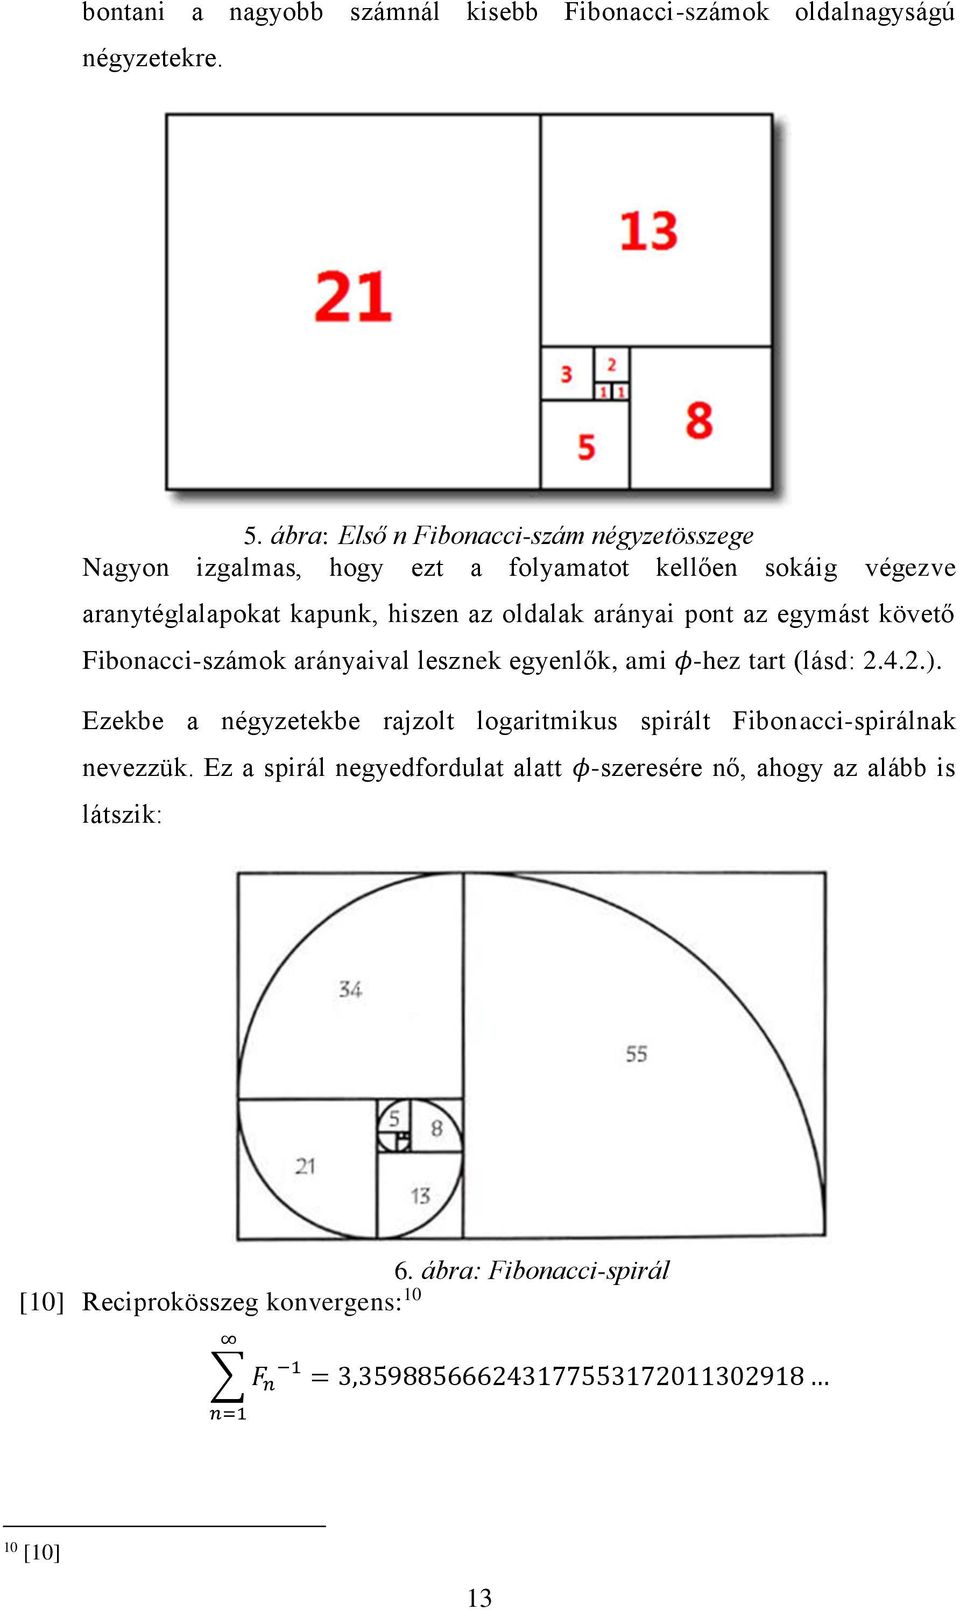 fibonacci javítások és kiterjesztések